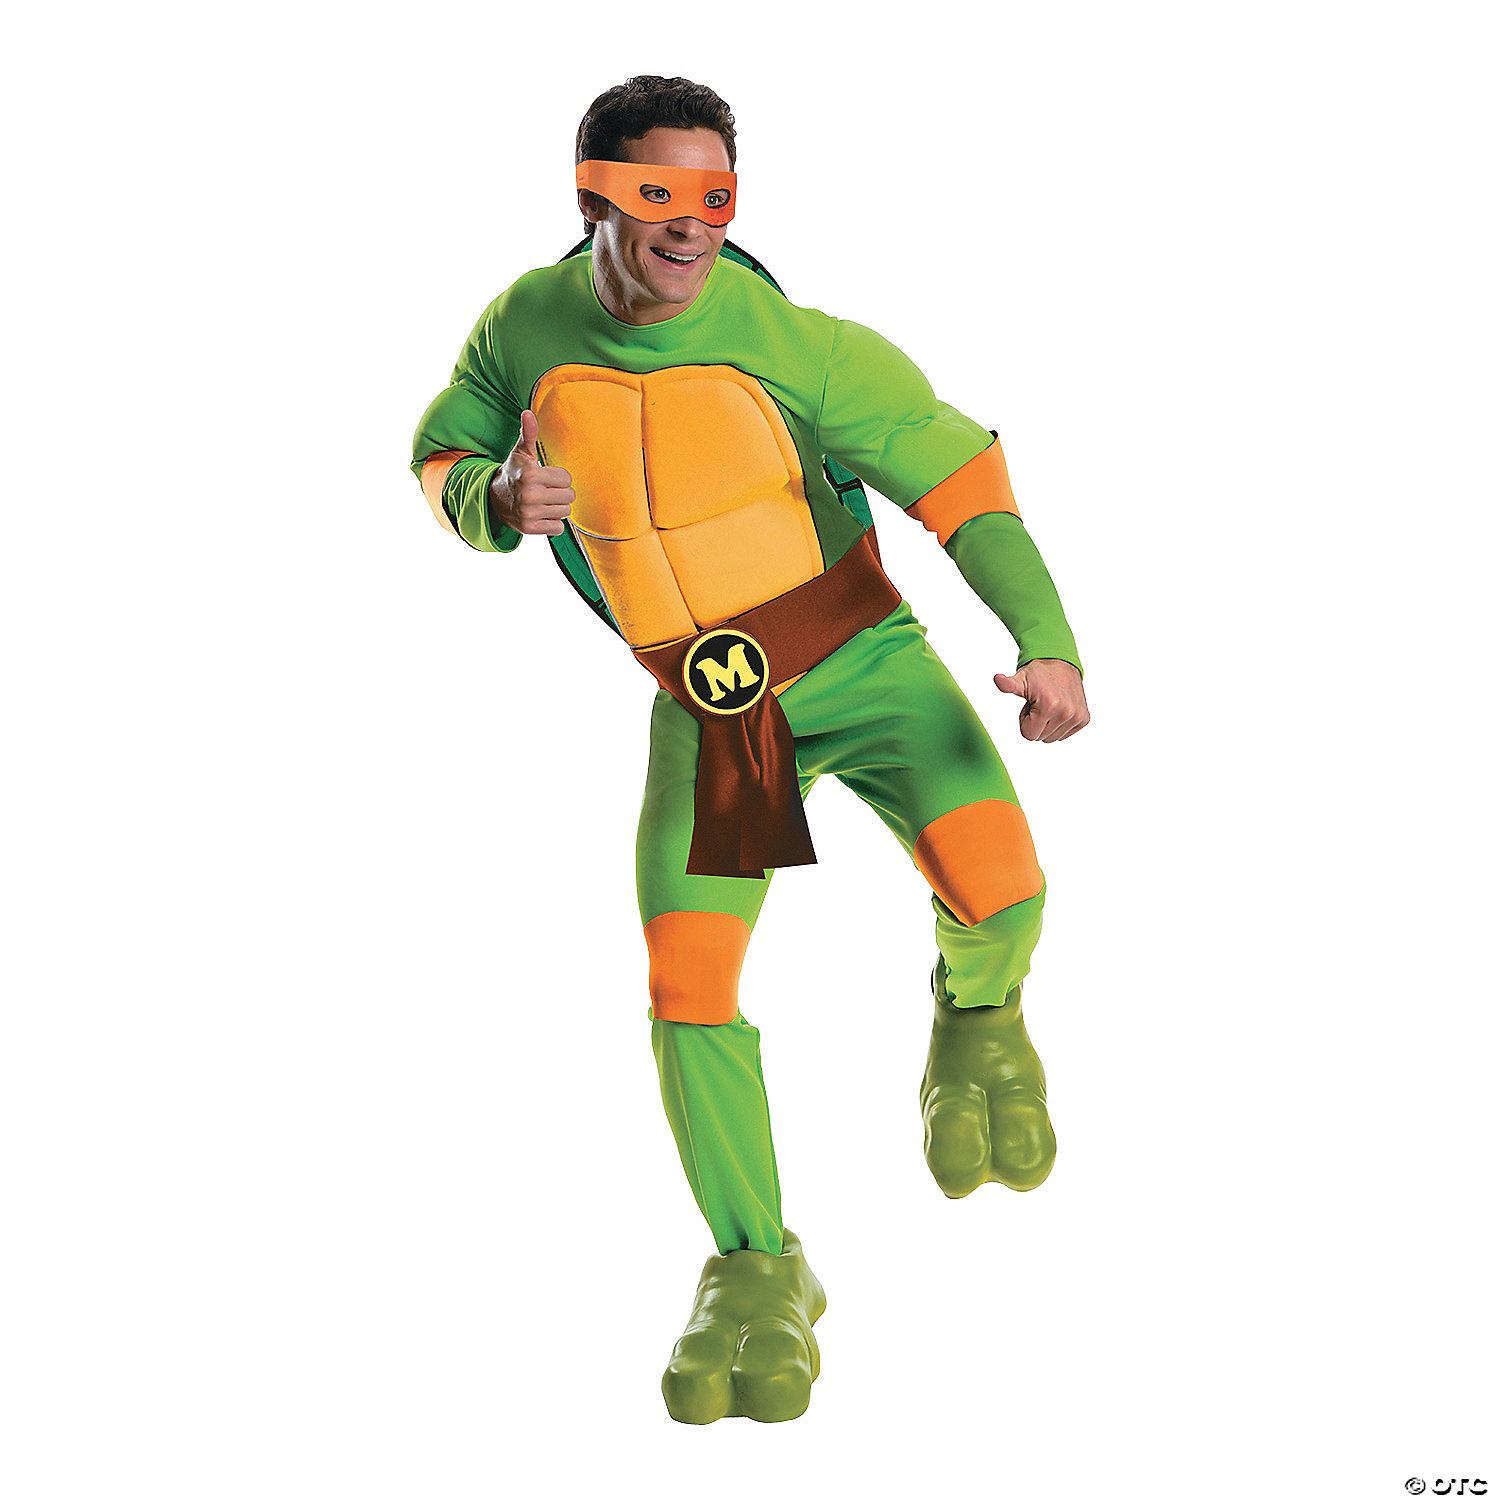 https://s7.orientaltrading.com/is/image/OrientalTrading/VIEWER_ZOOM/mens-teenage-mutant-ninja-turtle-michelangelo-costume~13770035